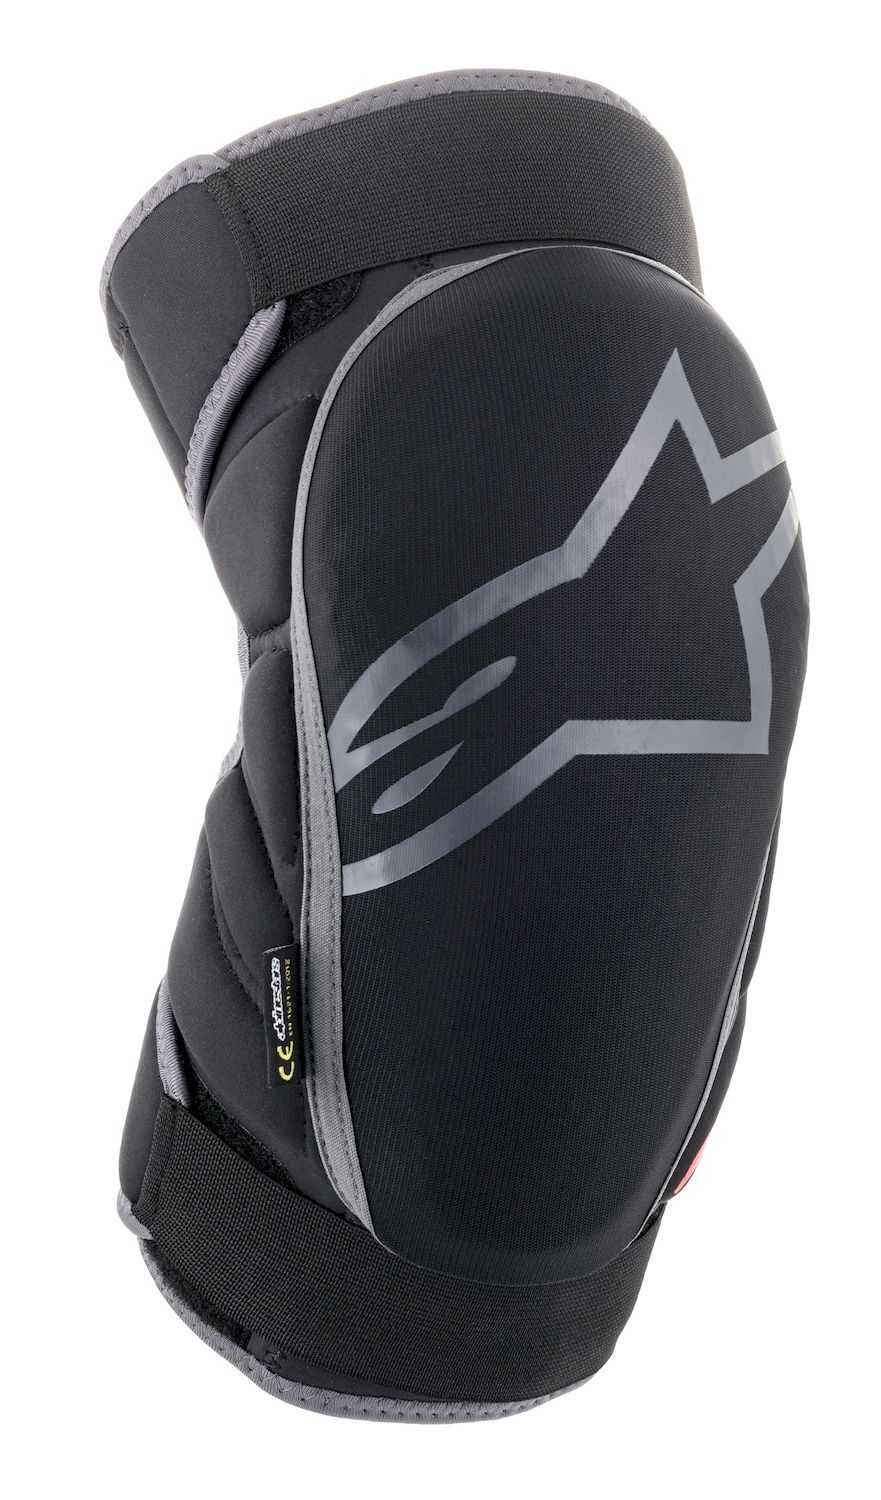 Alpine Stars Vector Knee Protector - MTB Elbow pads - Men's